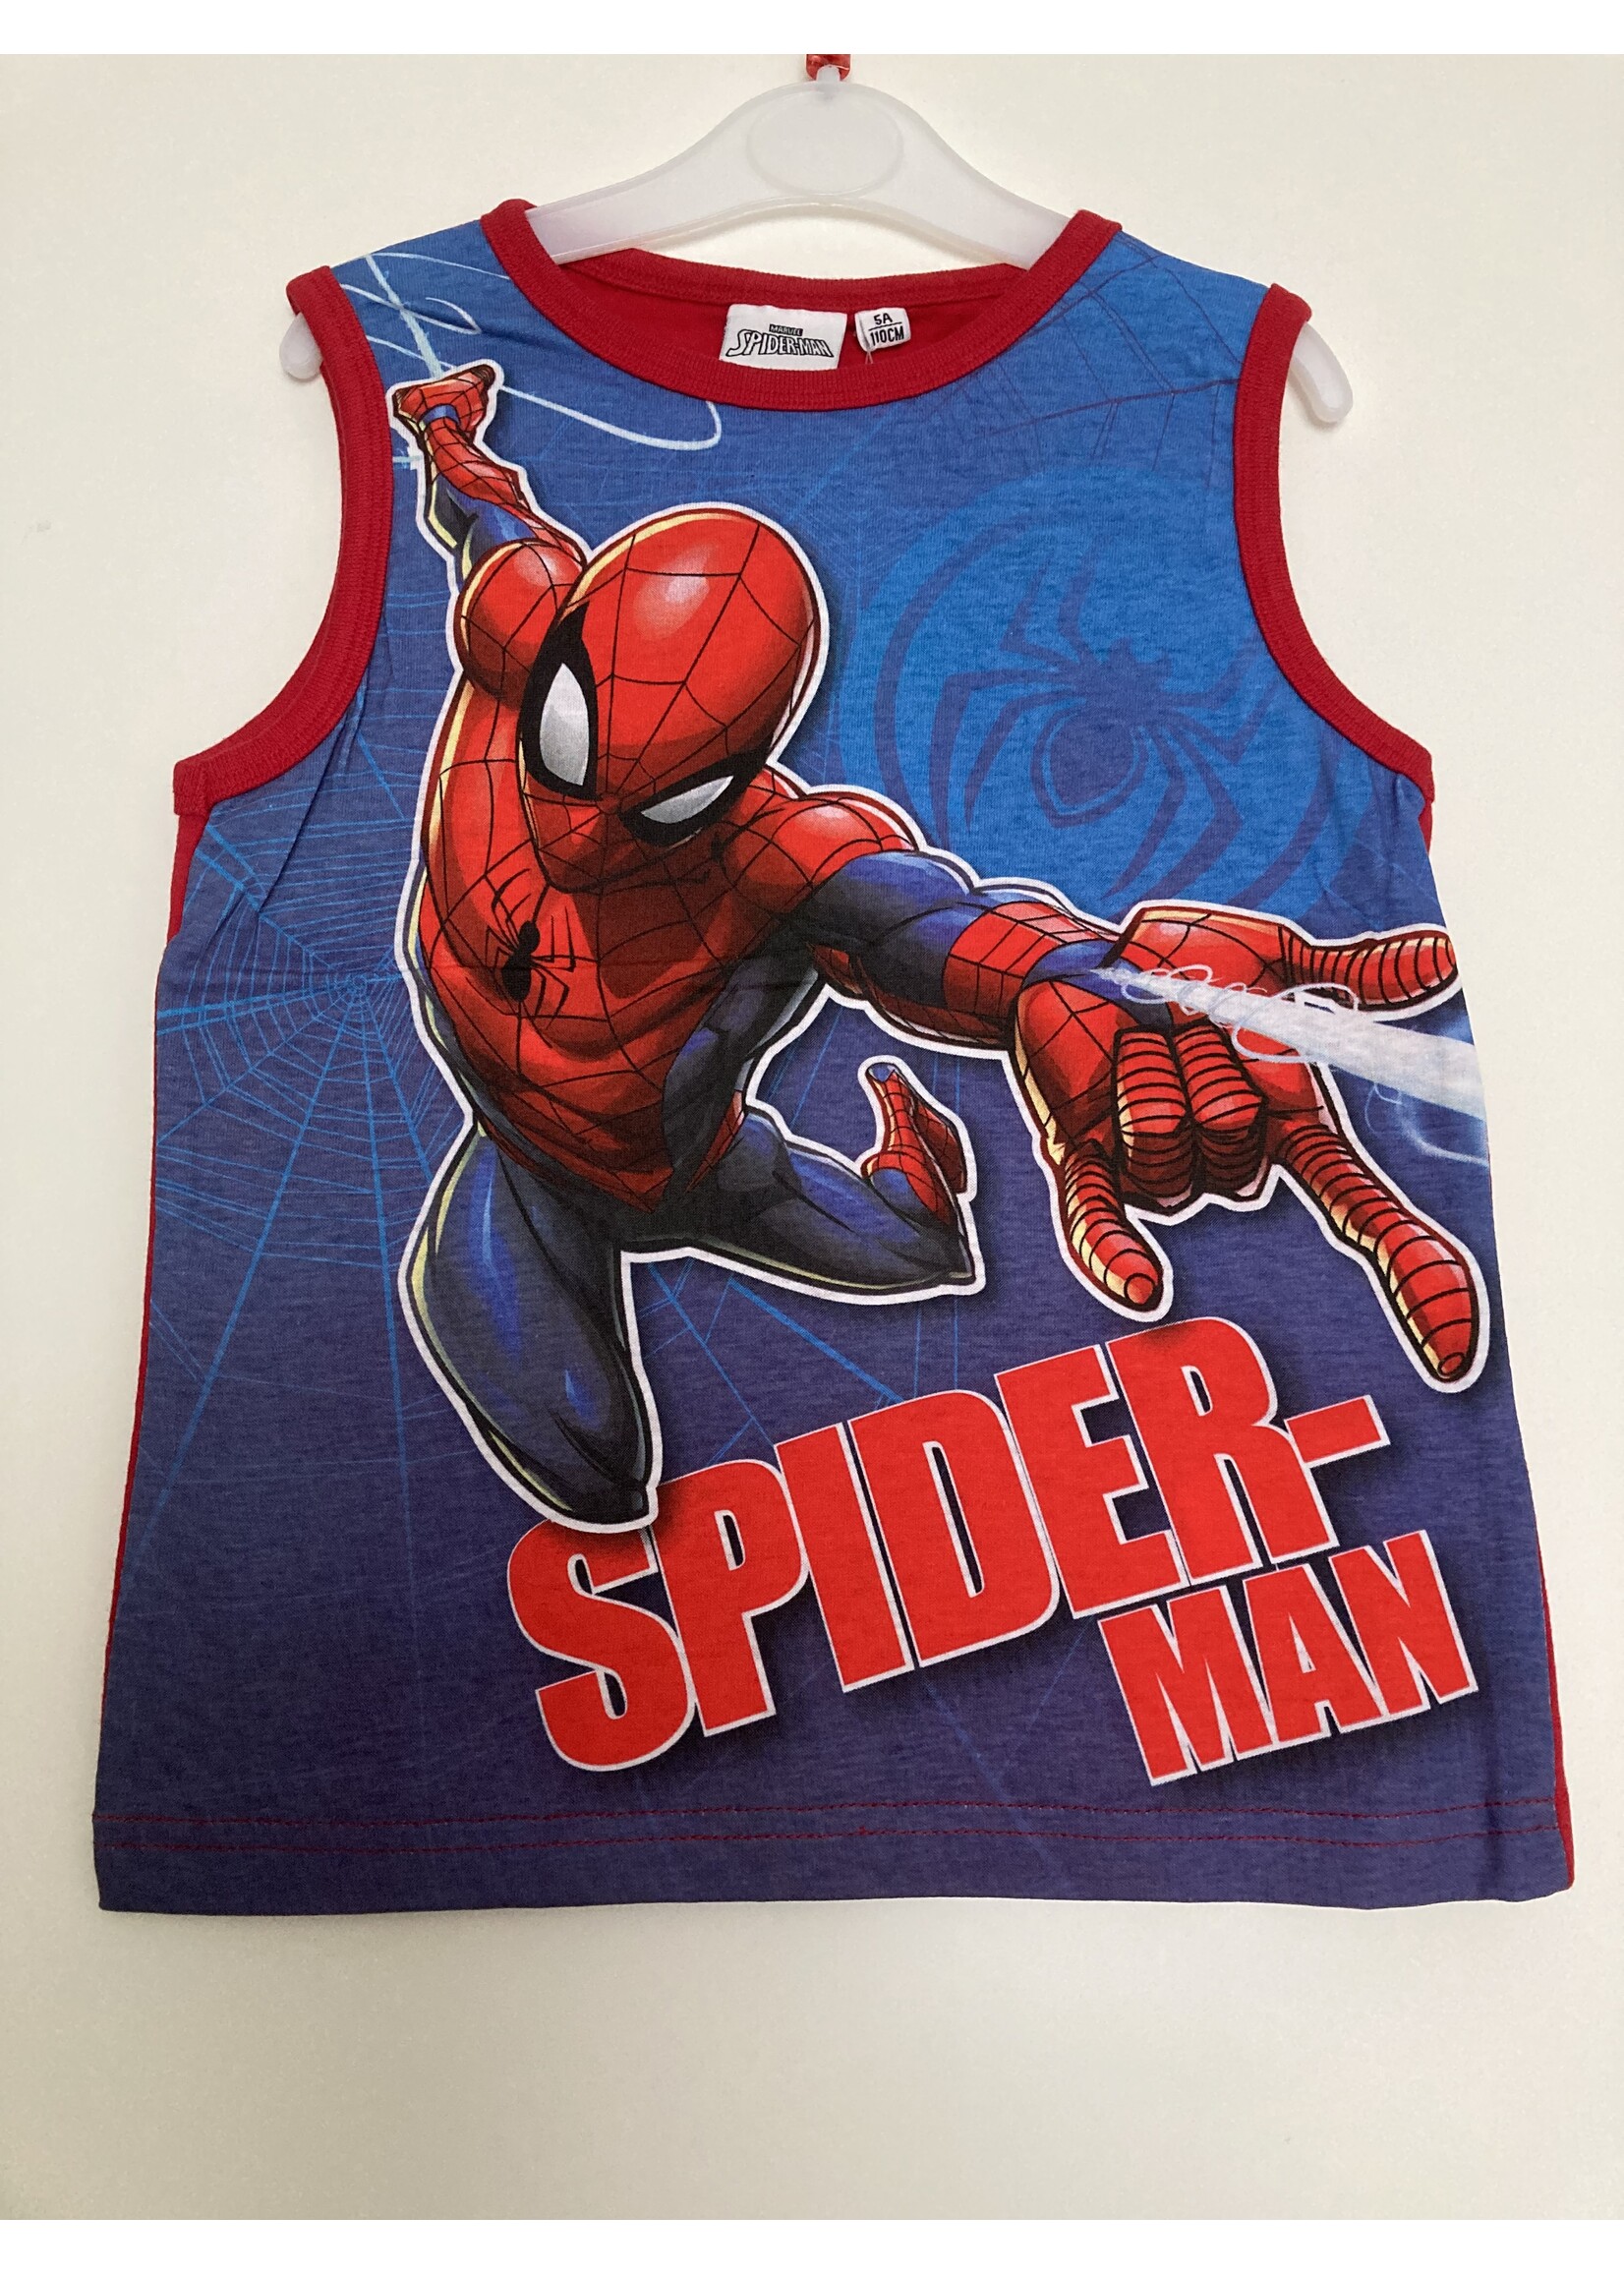 Marvel Spiderman sleeveless shirt from Marvel blue